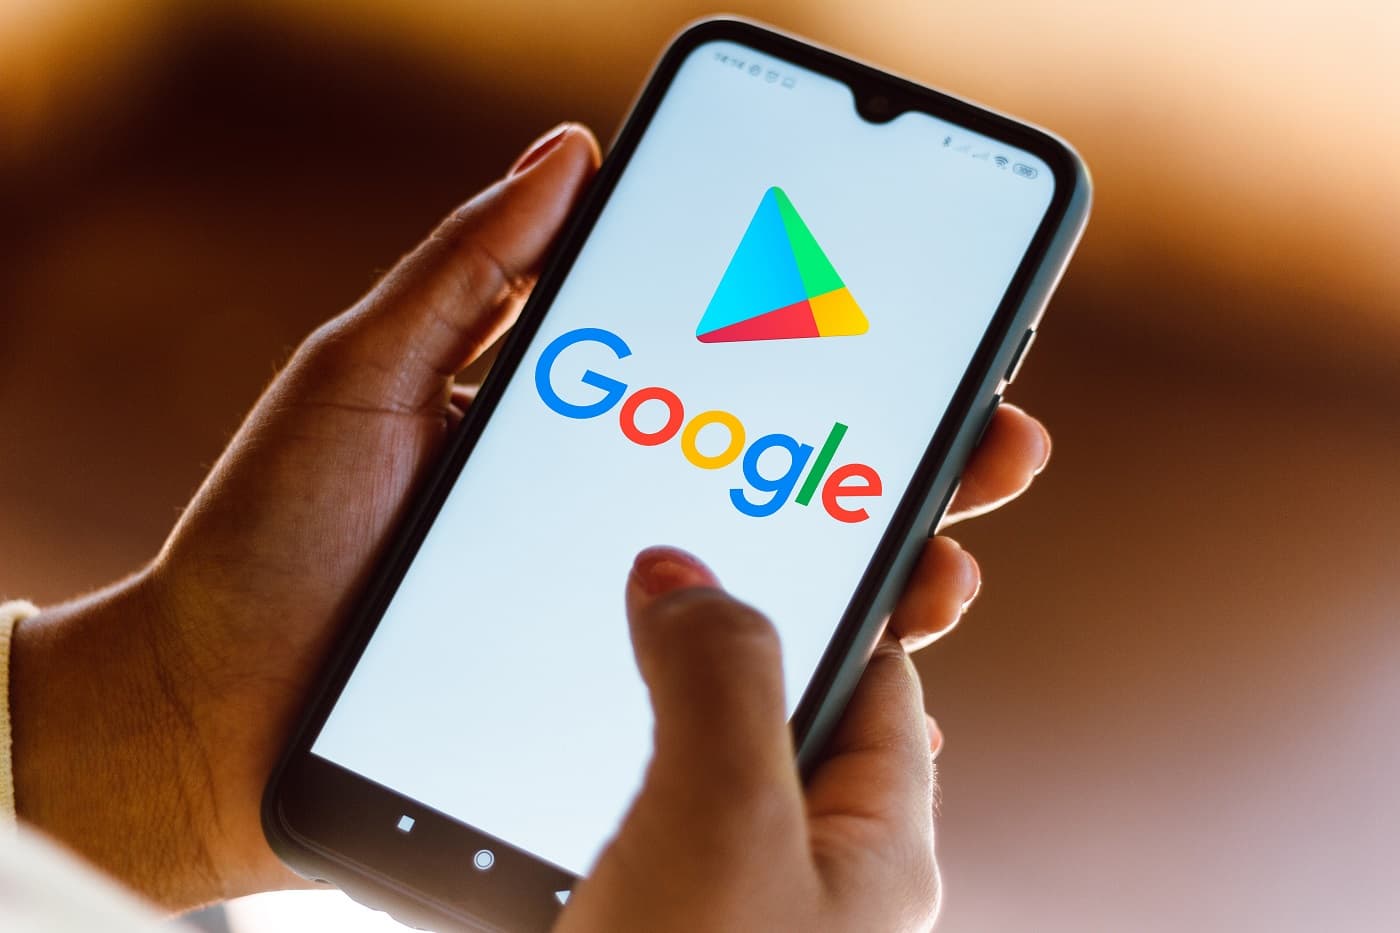 Google akan mengizinkan aplikasi perjudian online untuk masuk ke Play Store 1 Maret 2021 mendatang.